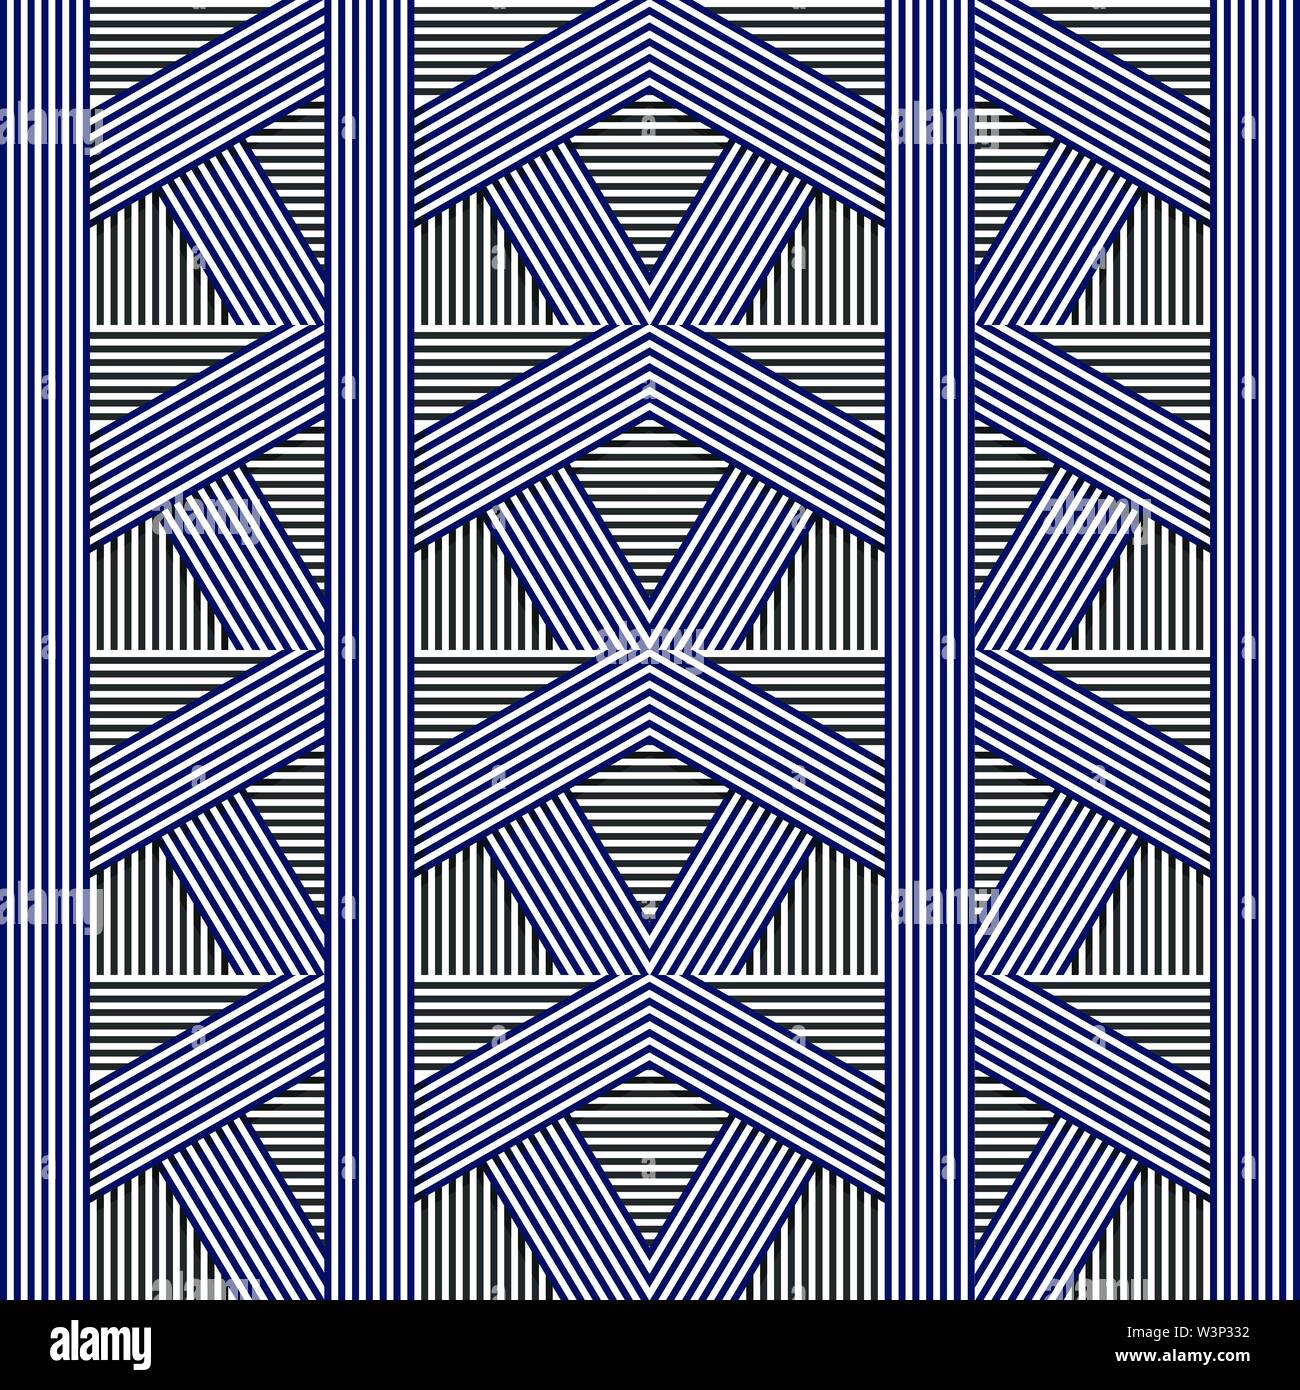 Die nahtlose Vektor geometrische Muster. Moderne Textur mit Linien, Streifen. Einfache abstrakte Geometrie grafik design Stock Vektor